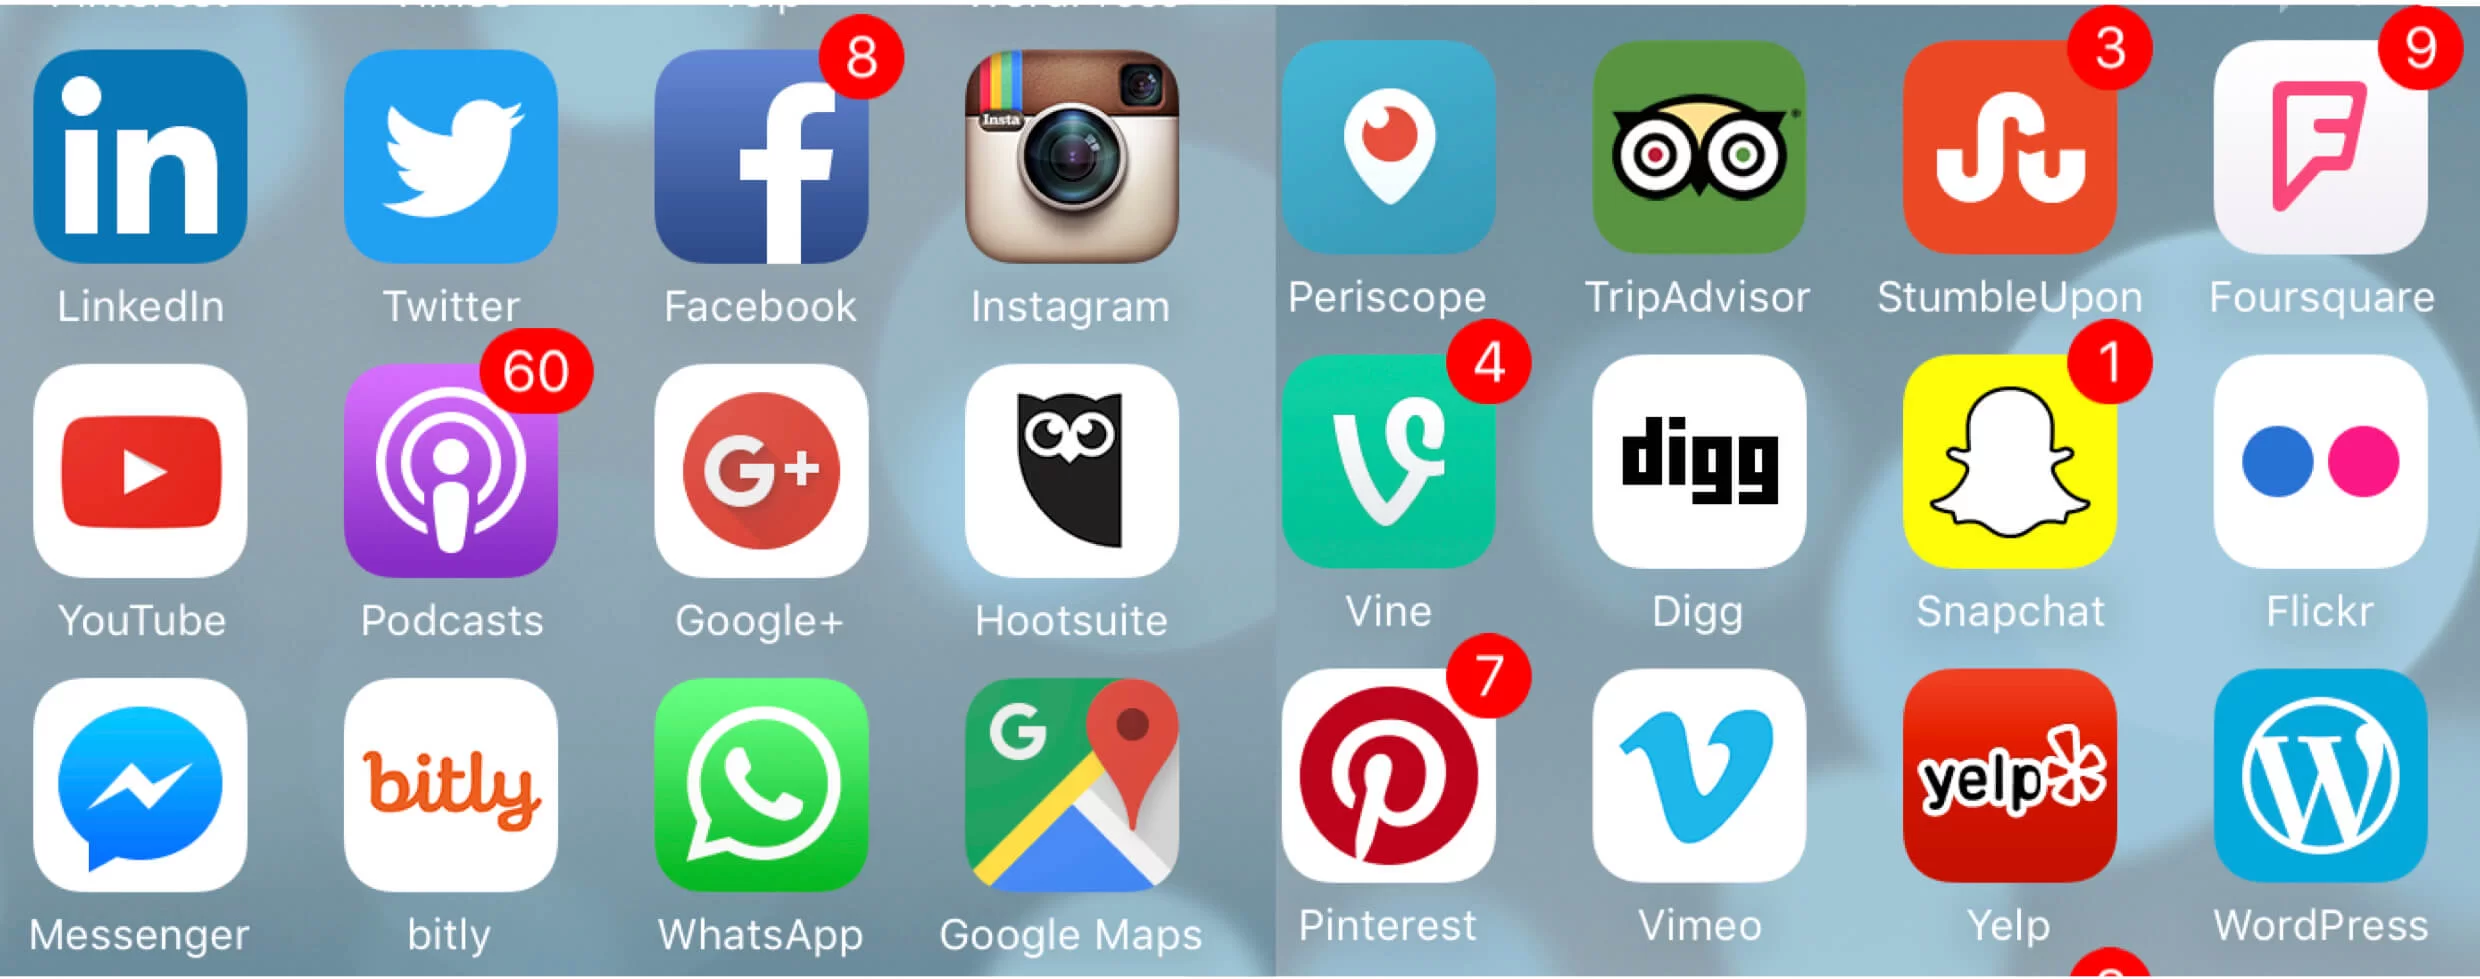 social-media-app-user-populations